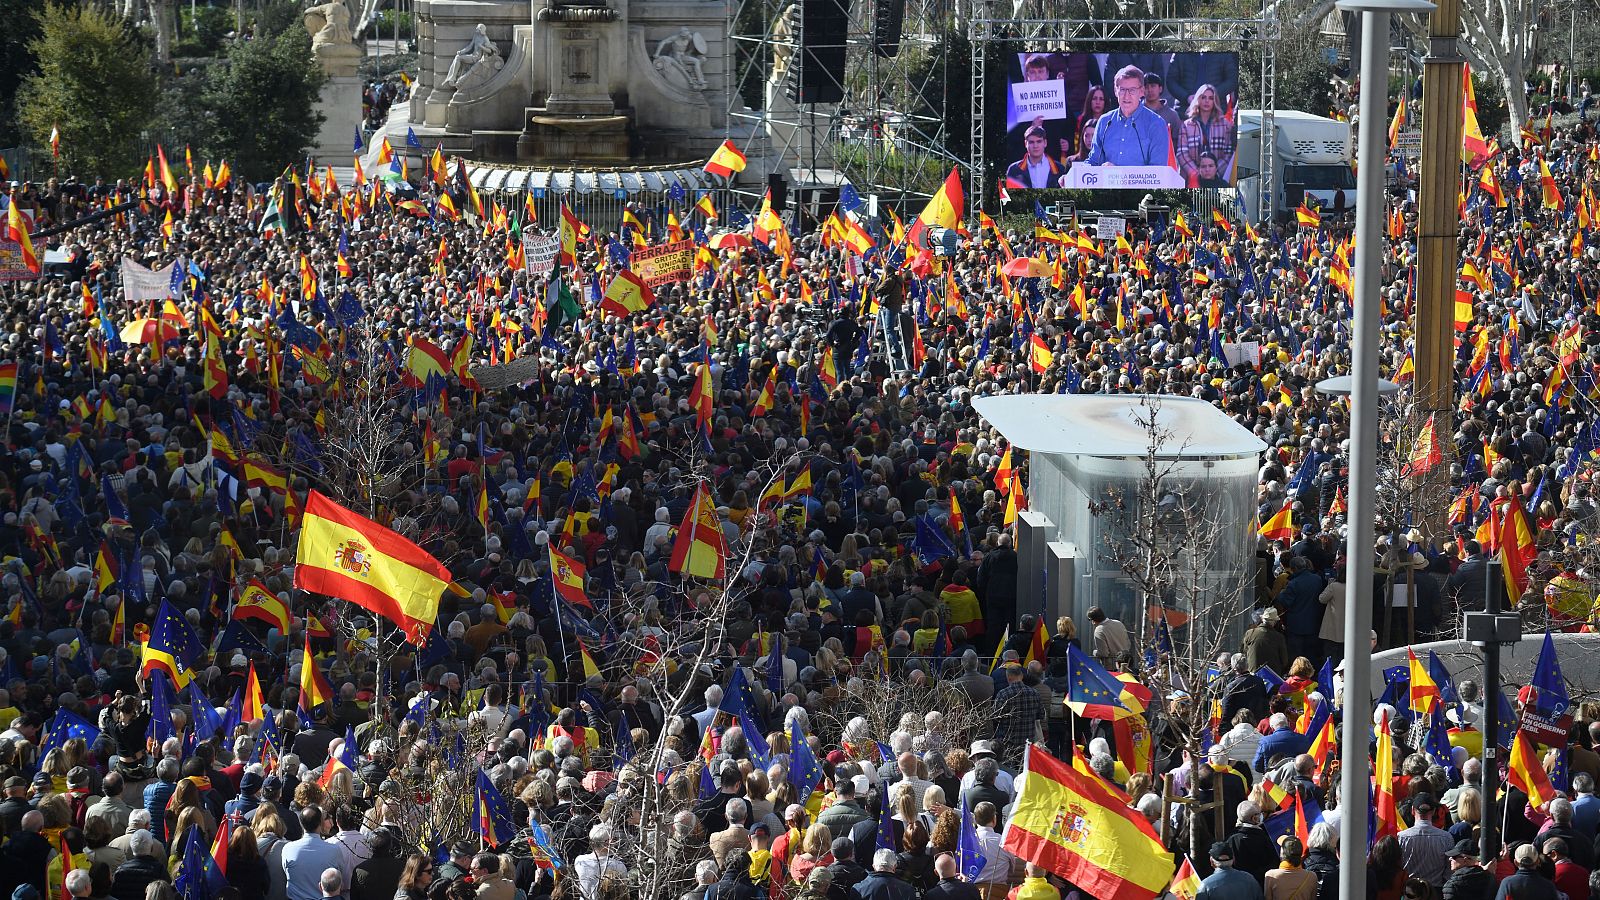 Feijóo promete "rescatar democráticamente" a España en una protesta contra la amnistía